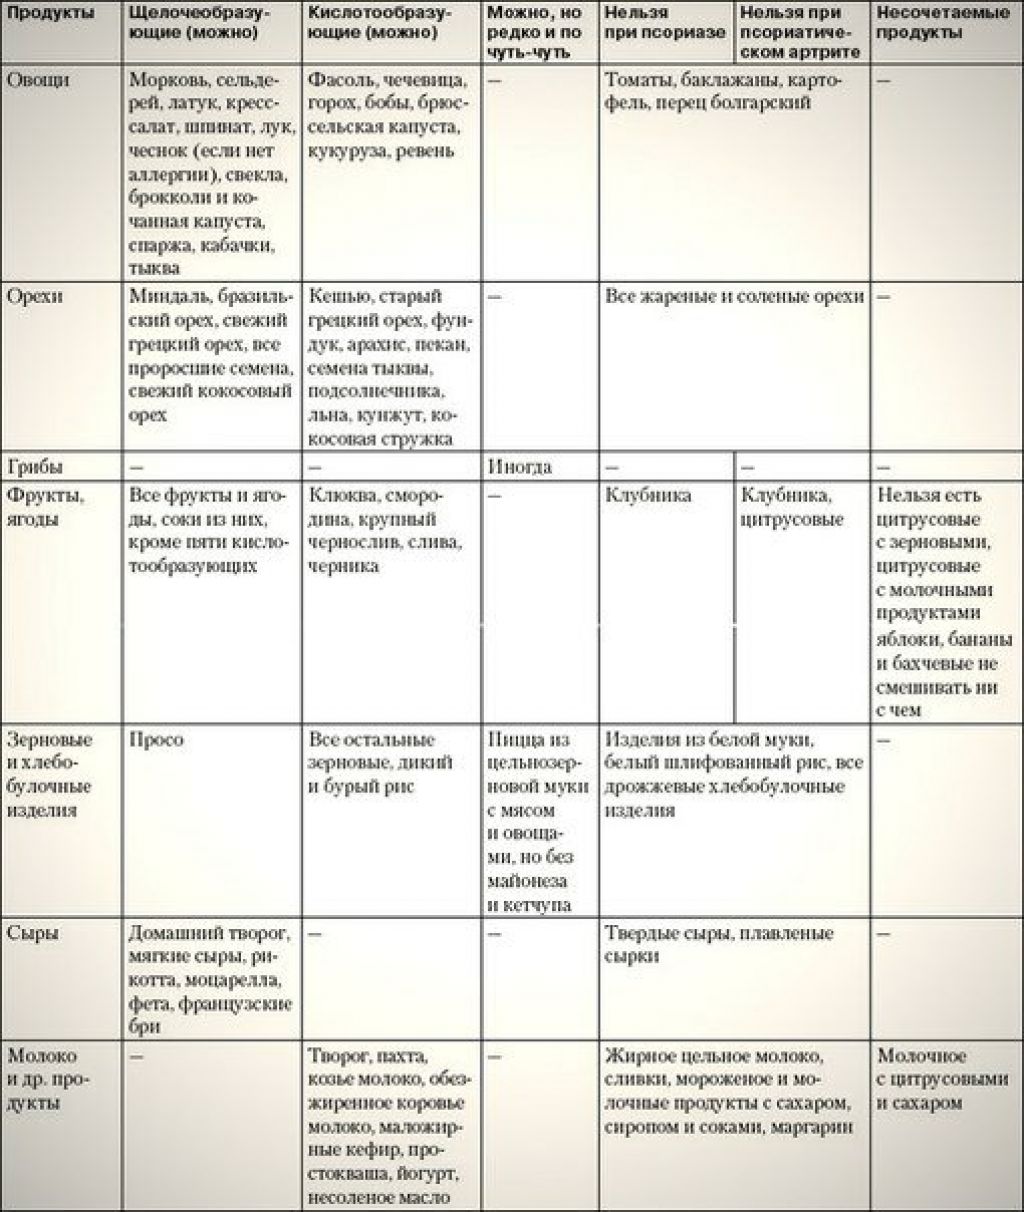 Диета при псориазе: меню и подробная таблица продуктов (что можно и нельзя есть)